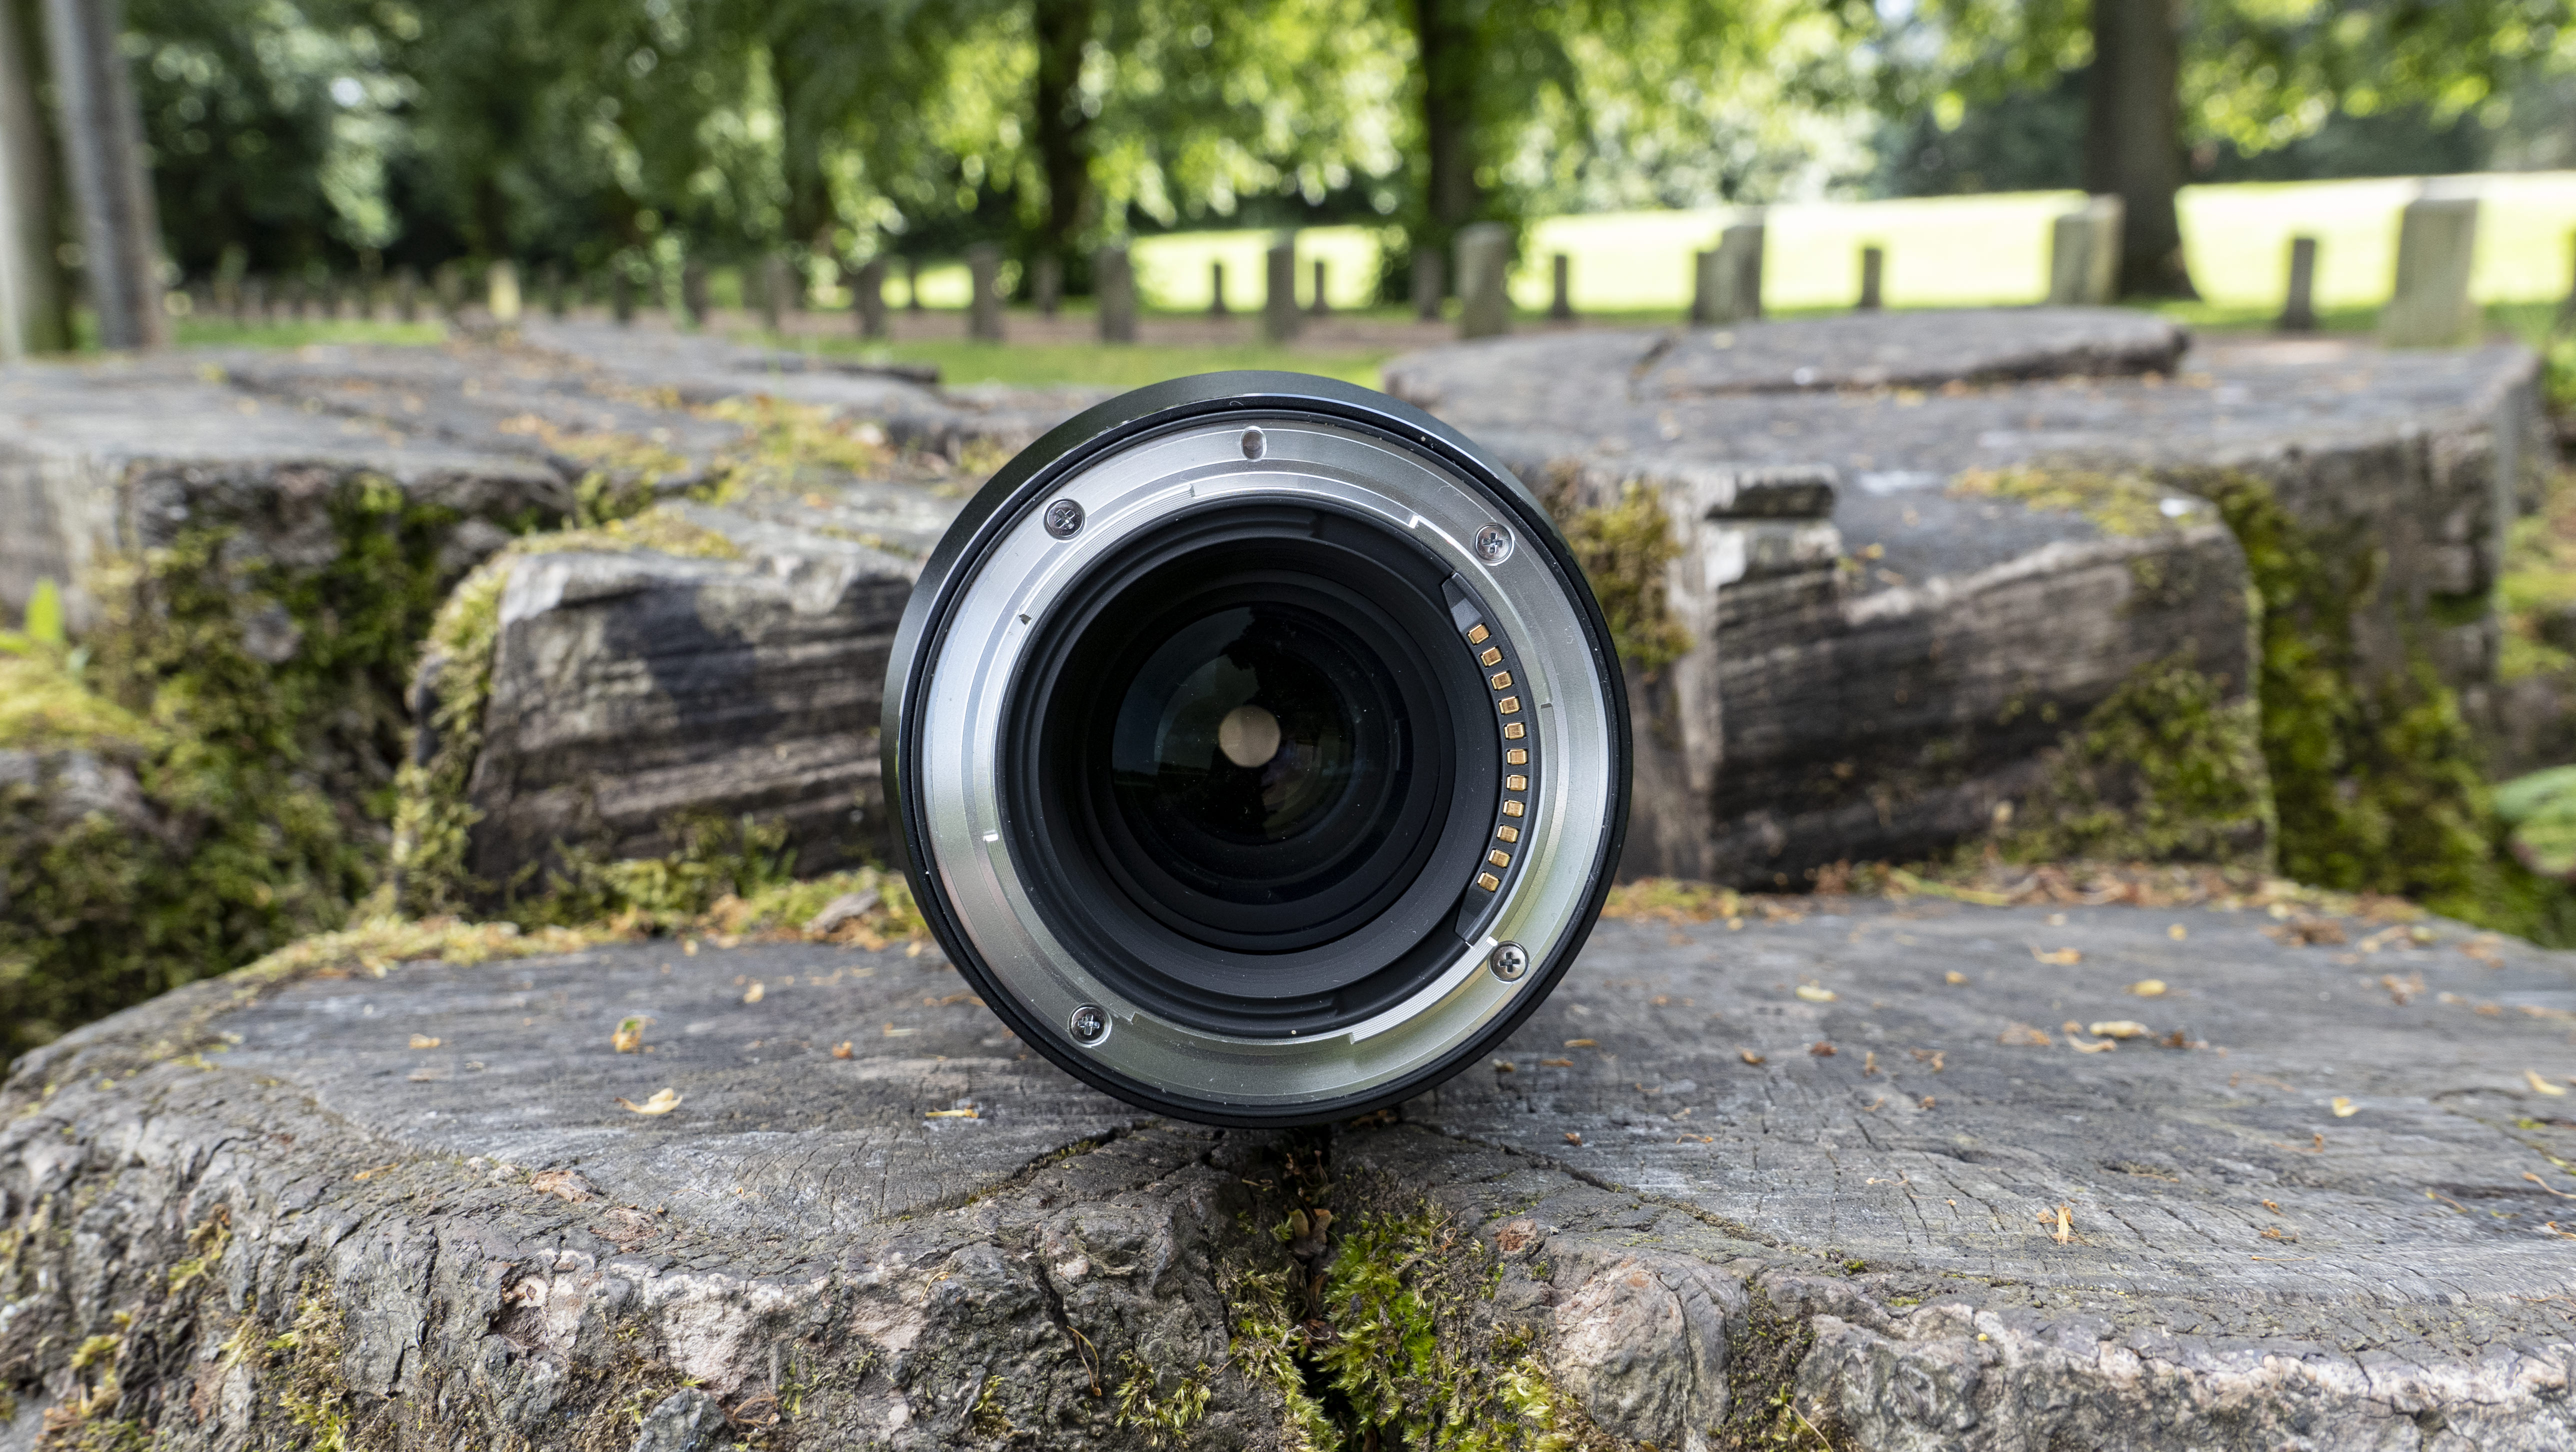 The inside of the Nikon Nikkor Z MC 105mm f/2.8 VR S lens